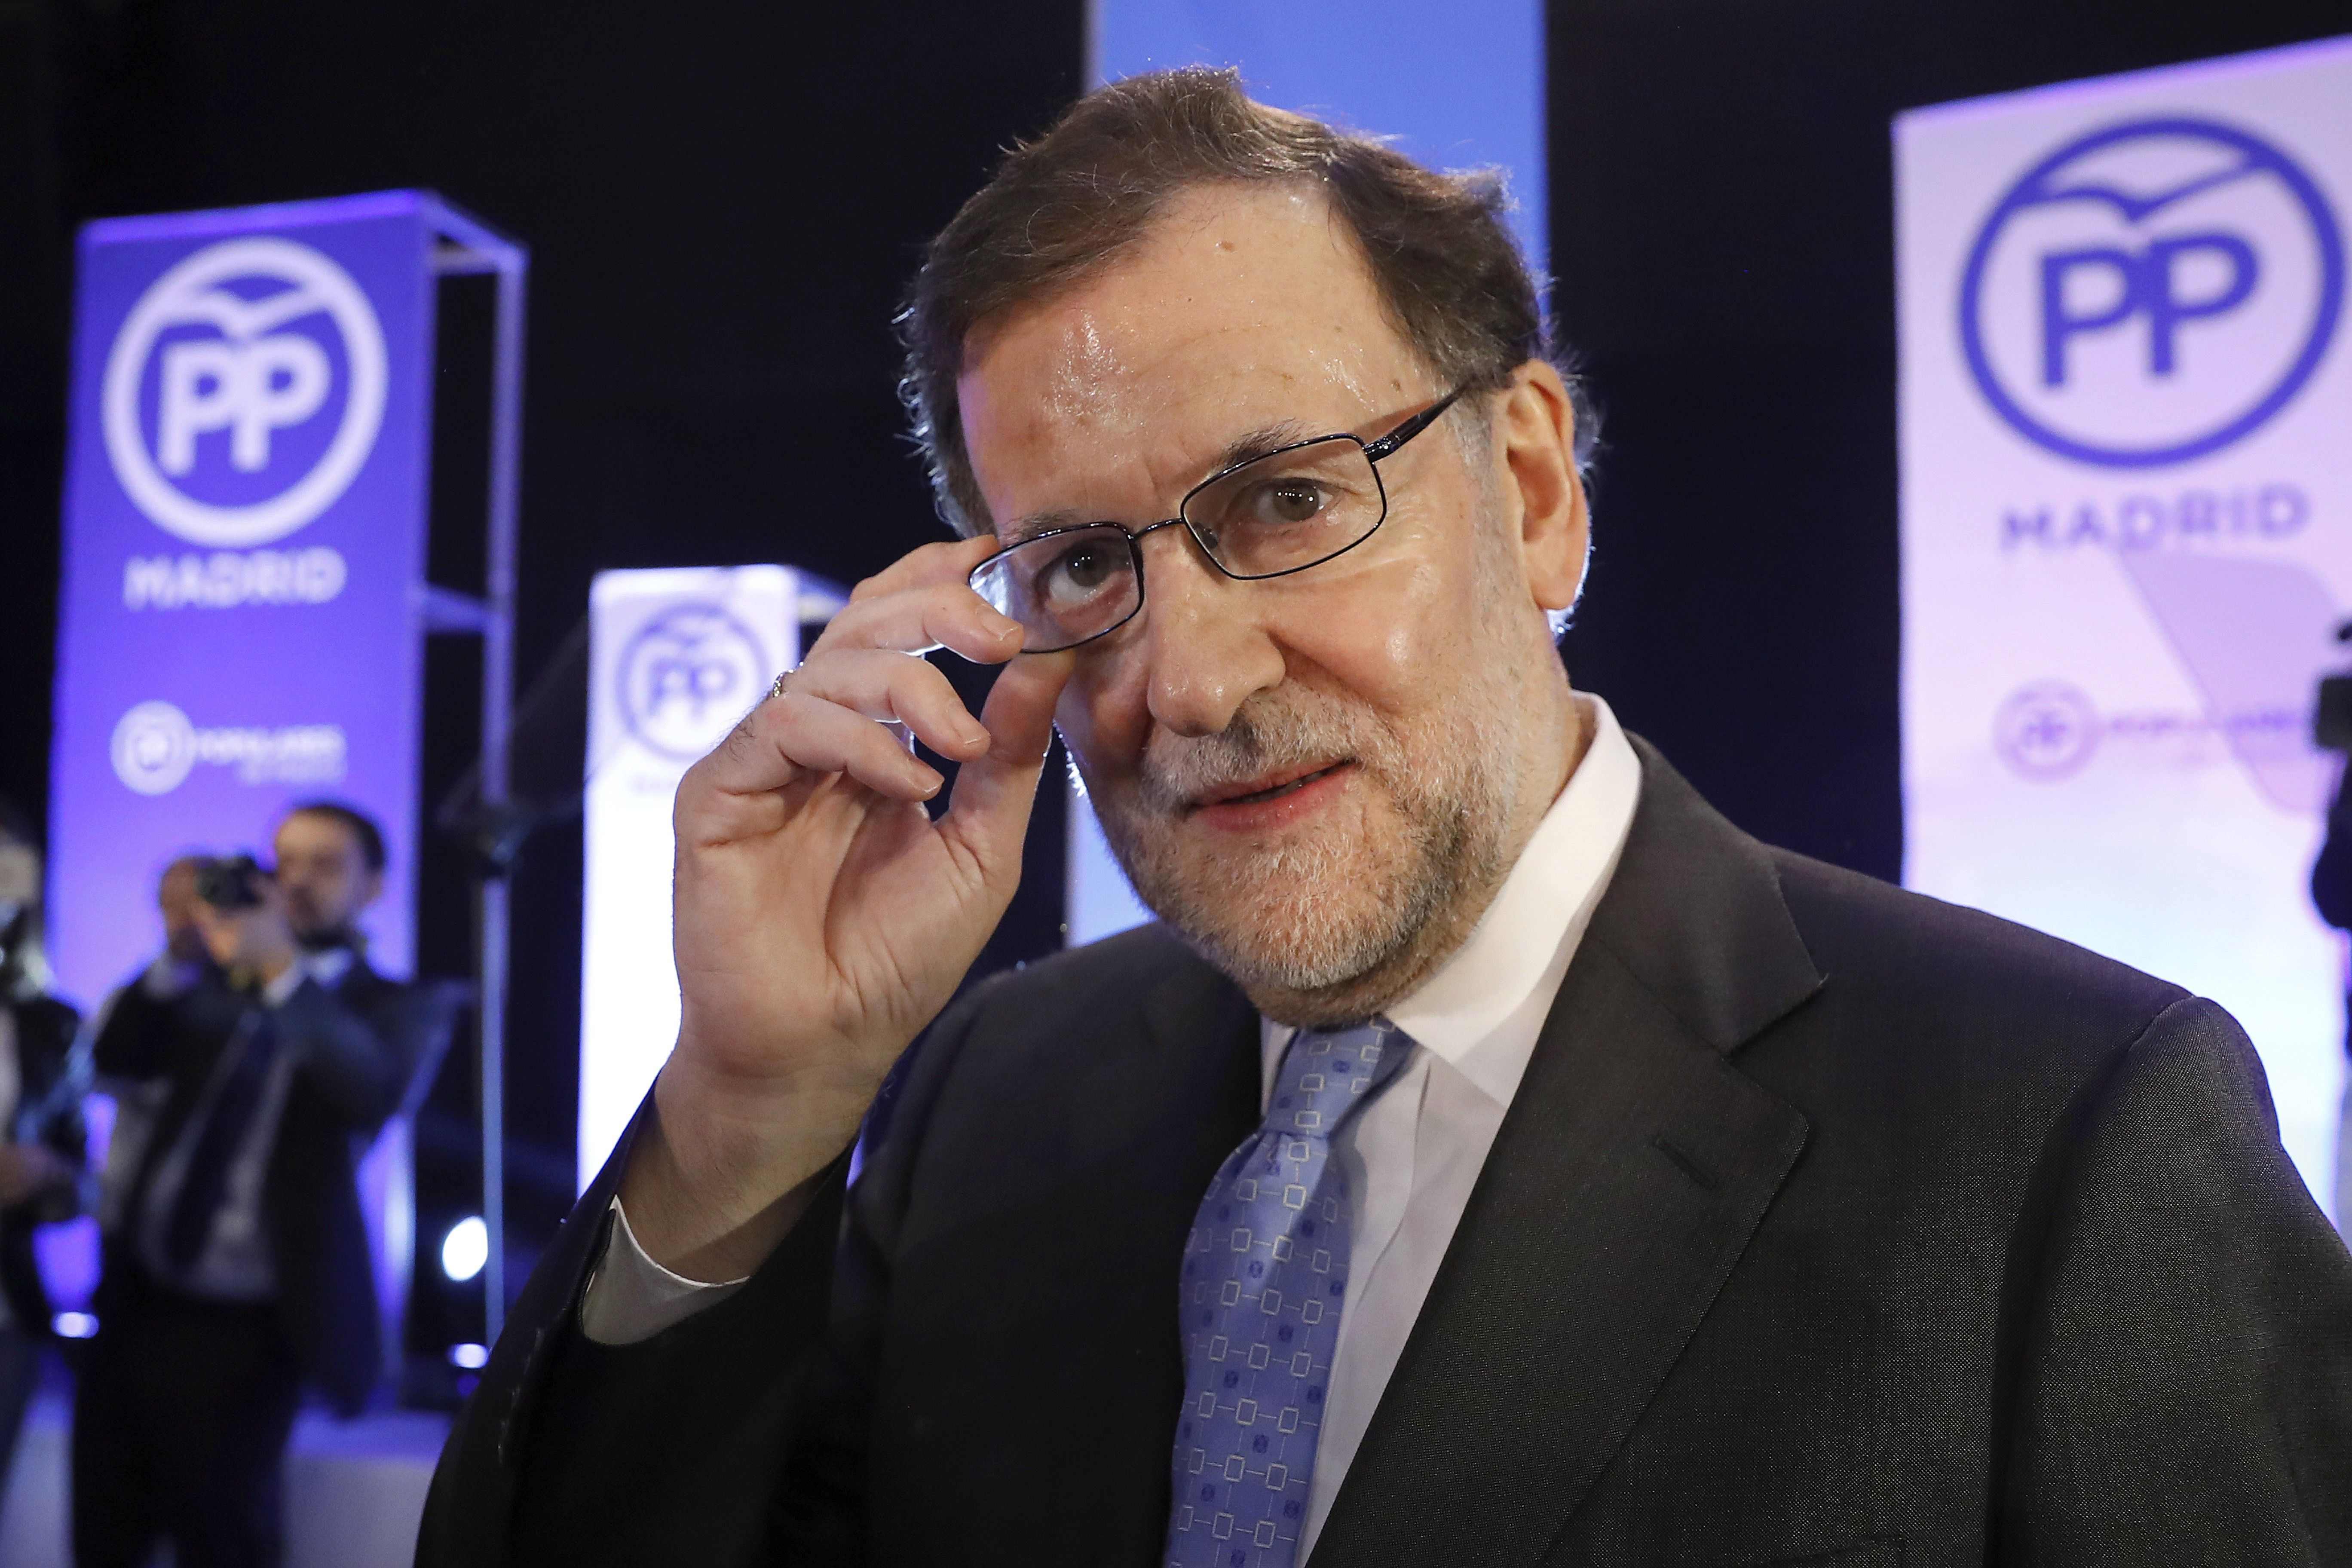 El último lapsus de Rajoy: "Ya preparando las próximas elecciones"